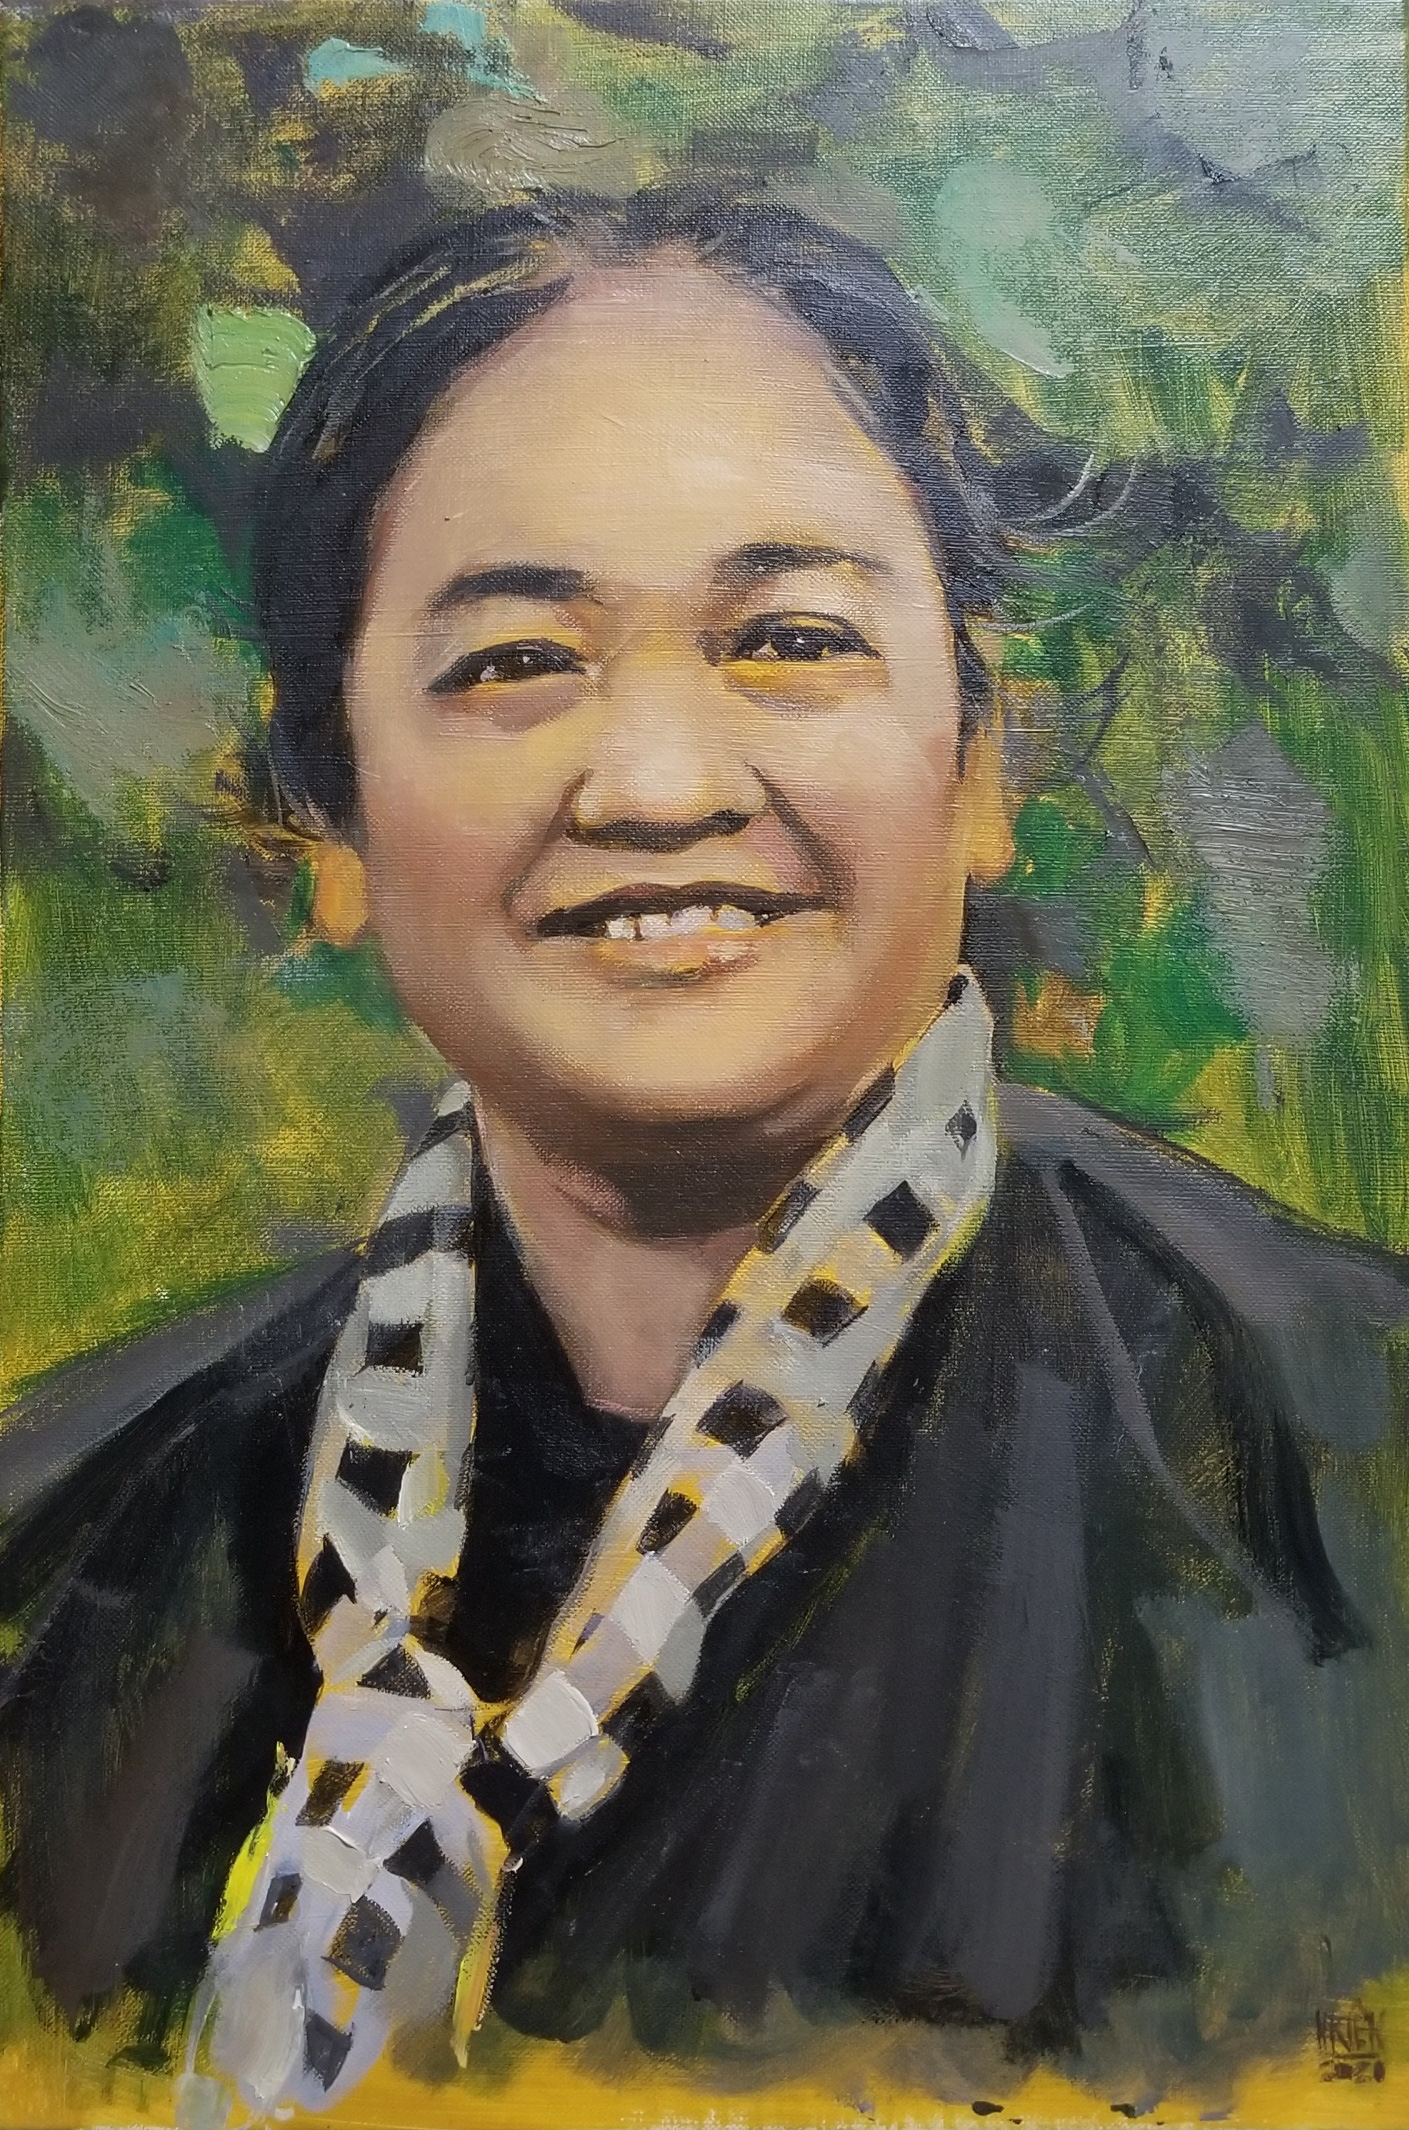 Khai mạc triển lãm tranh &quot;Phụ nữ vẽ & Vẽ Phụ nữ&quot; với chân dung những người phụ nữ Việt Nam tiêu biểu  - Ảnh 3.